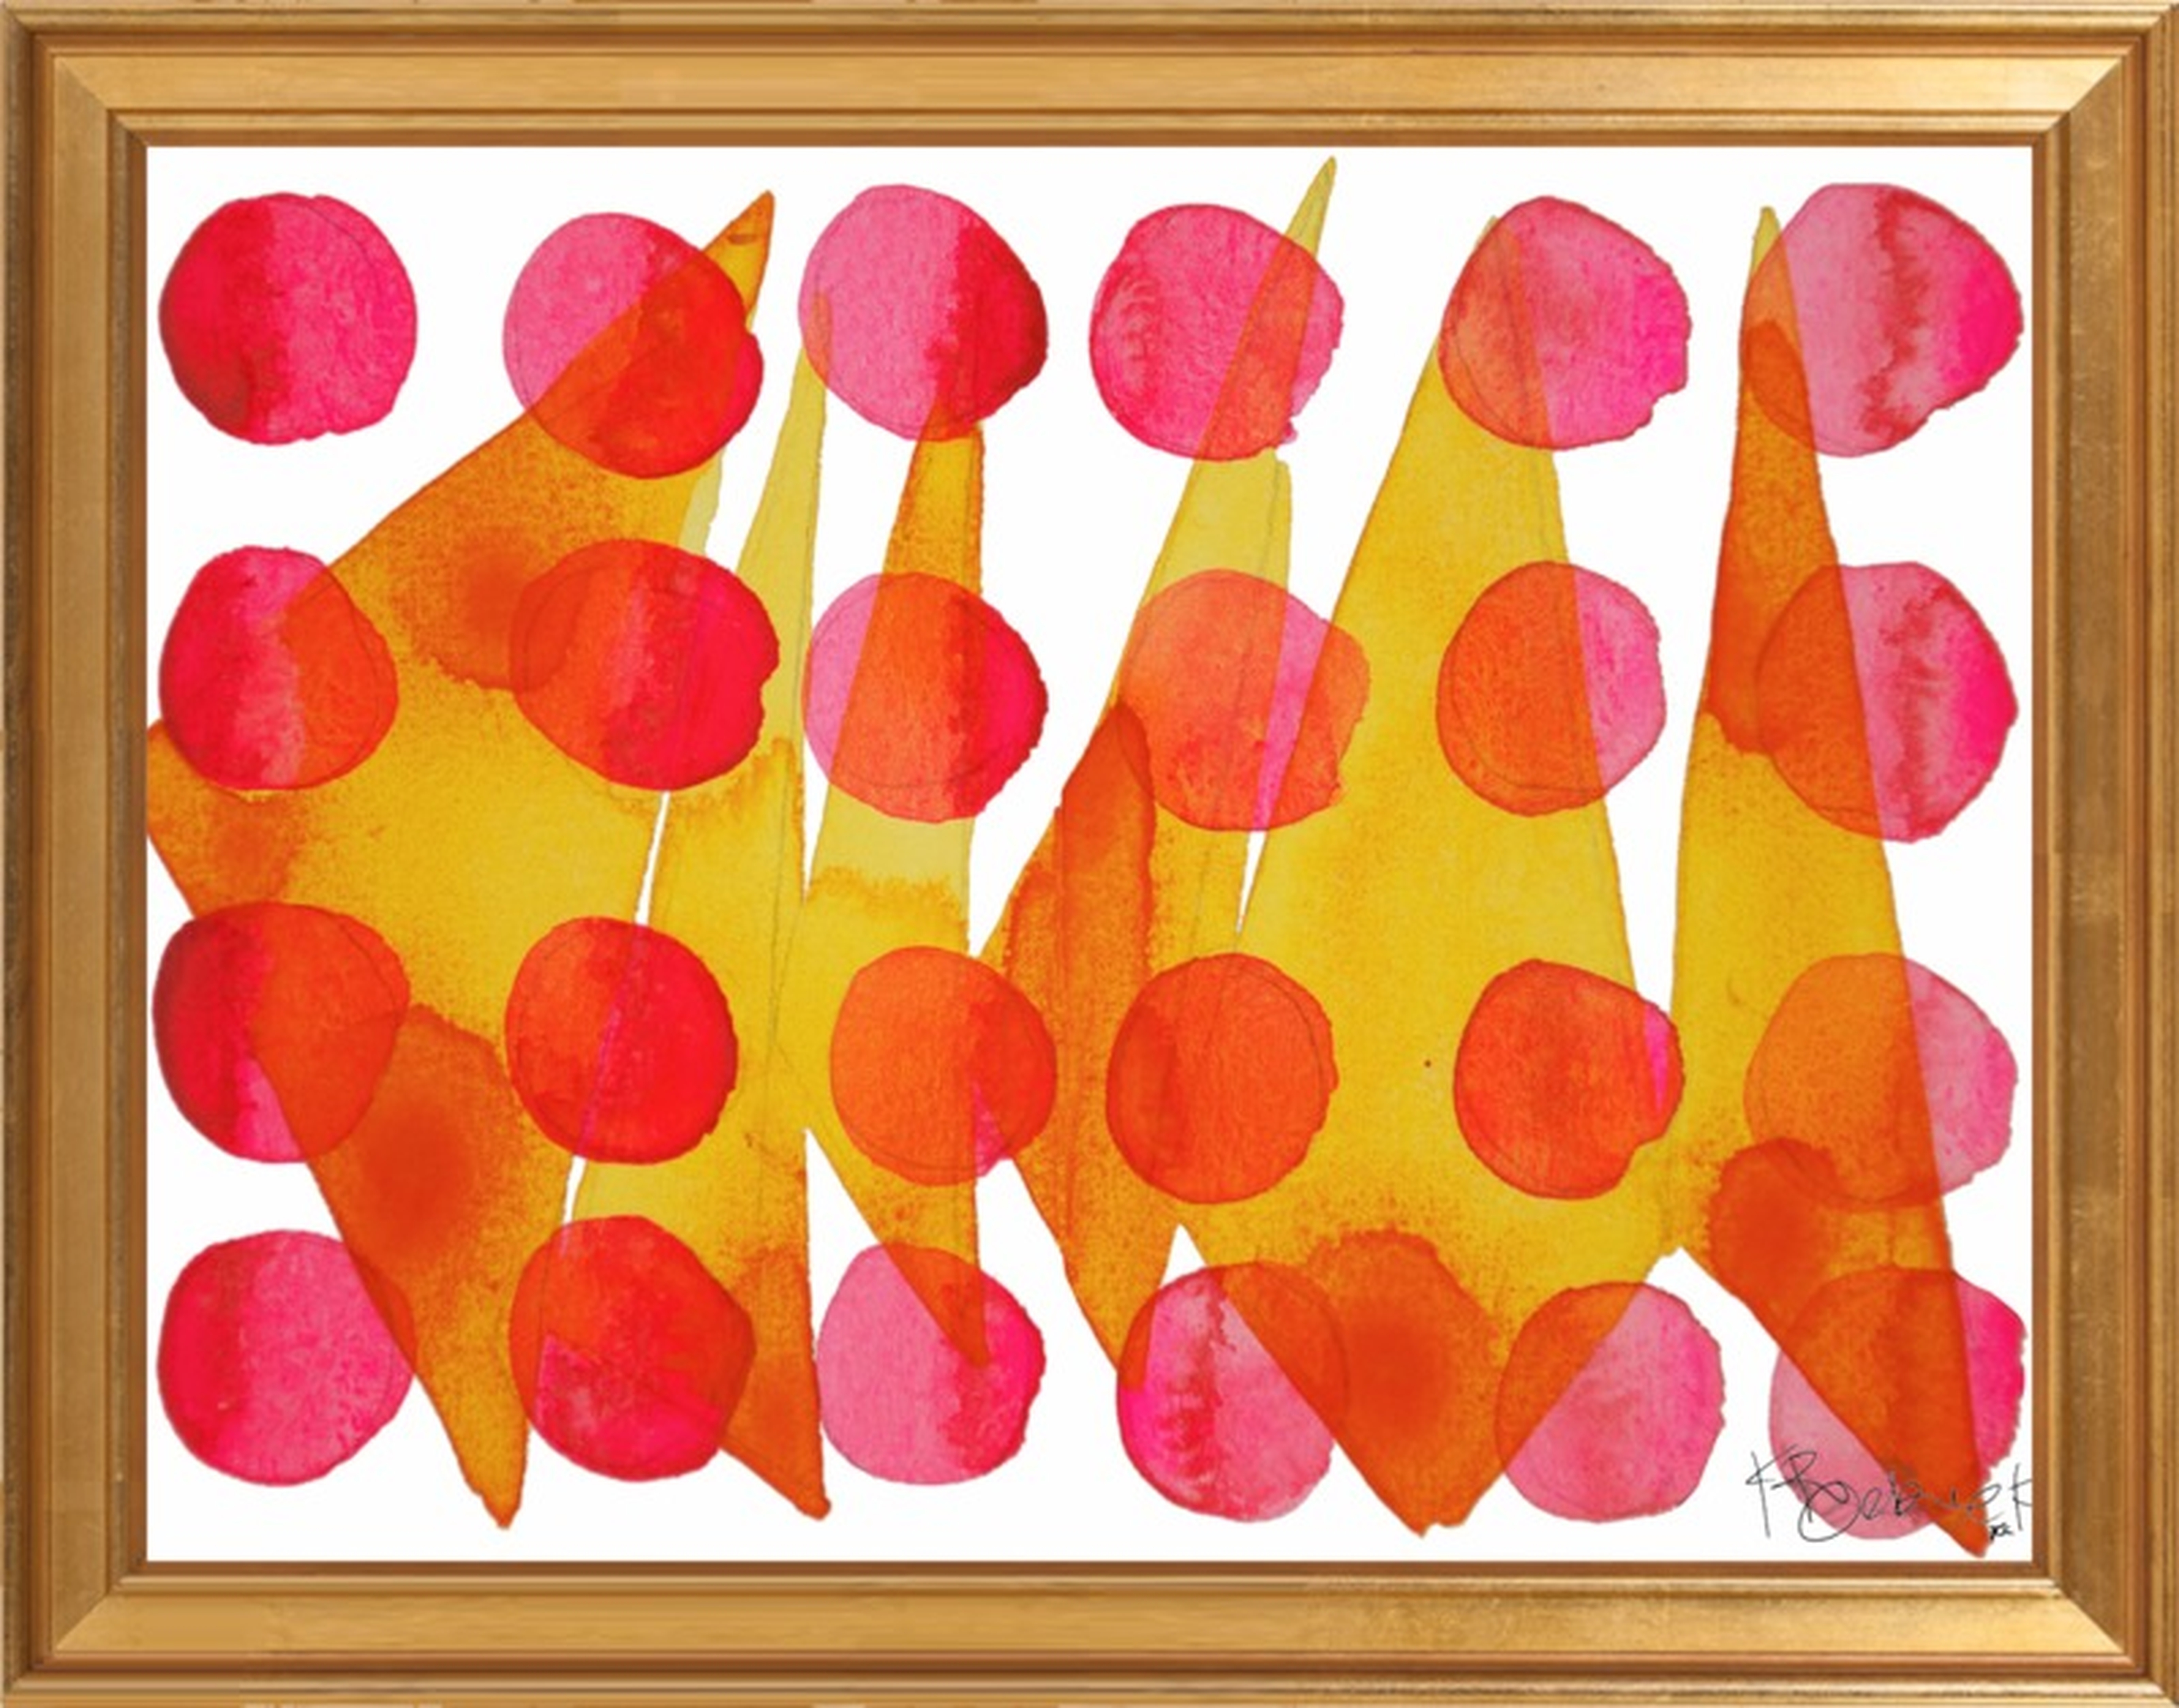 Polkadot Pattern by Kate Roebuck for Artfully Walls - Artfully Walls